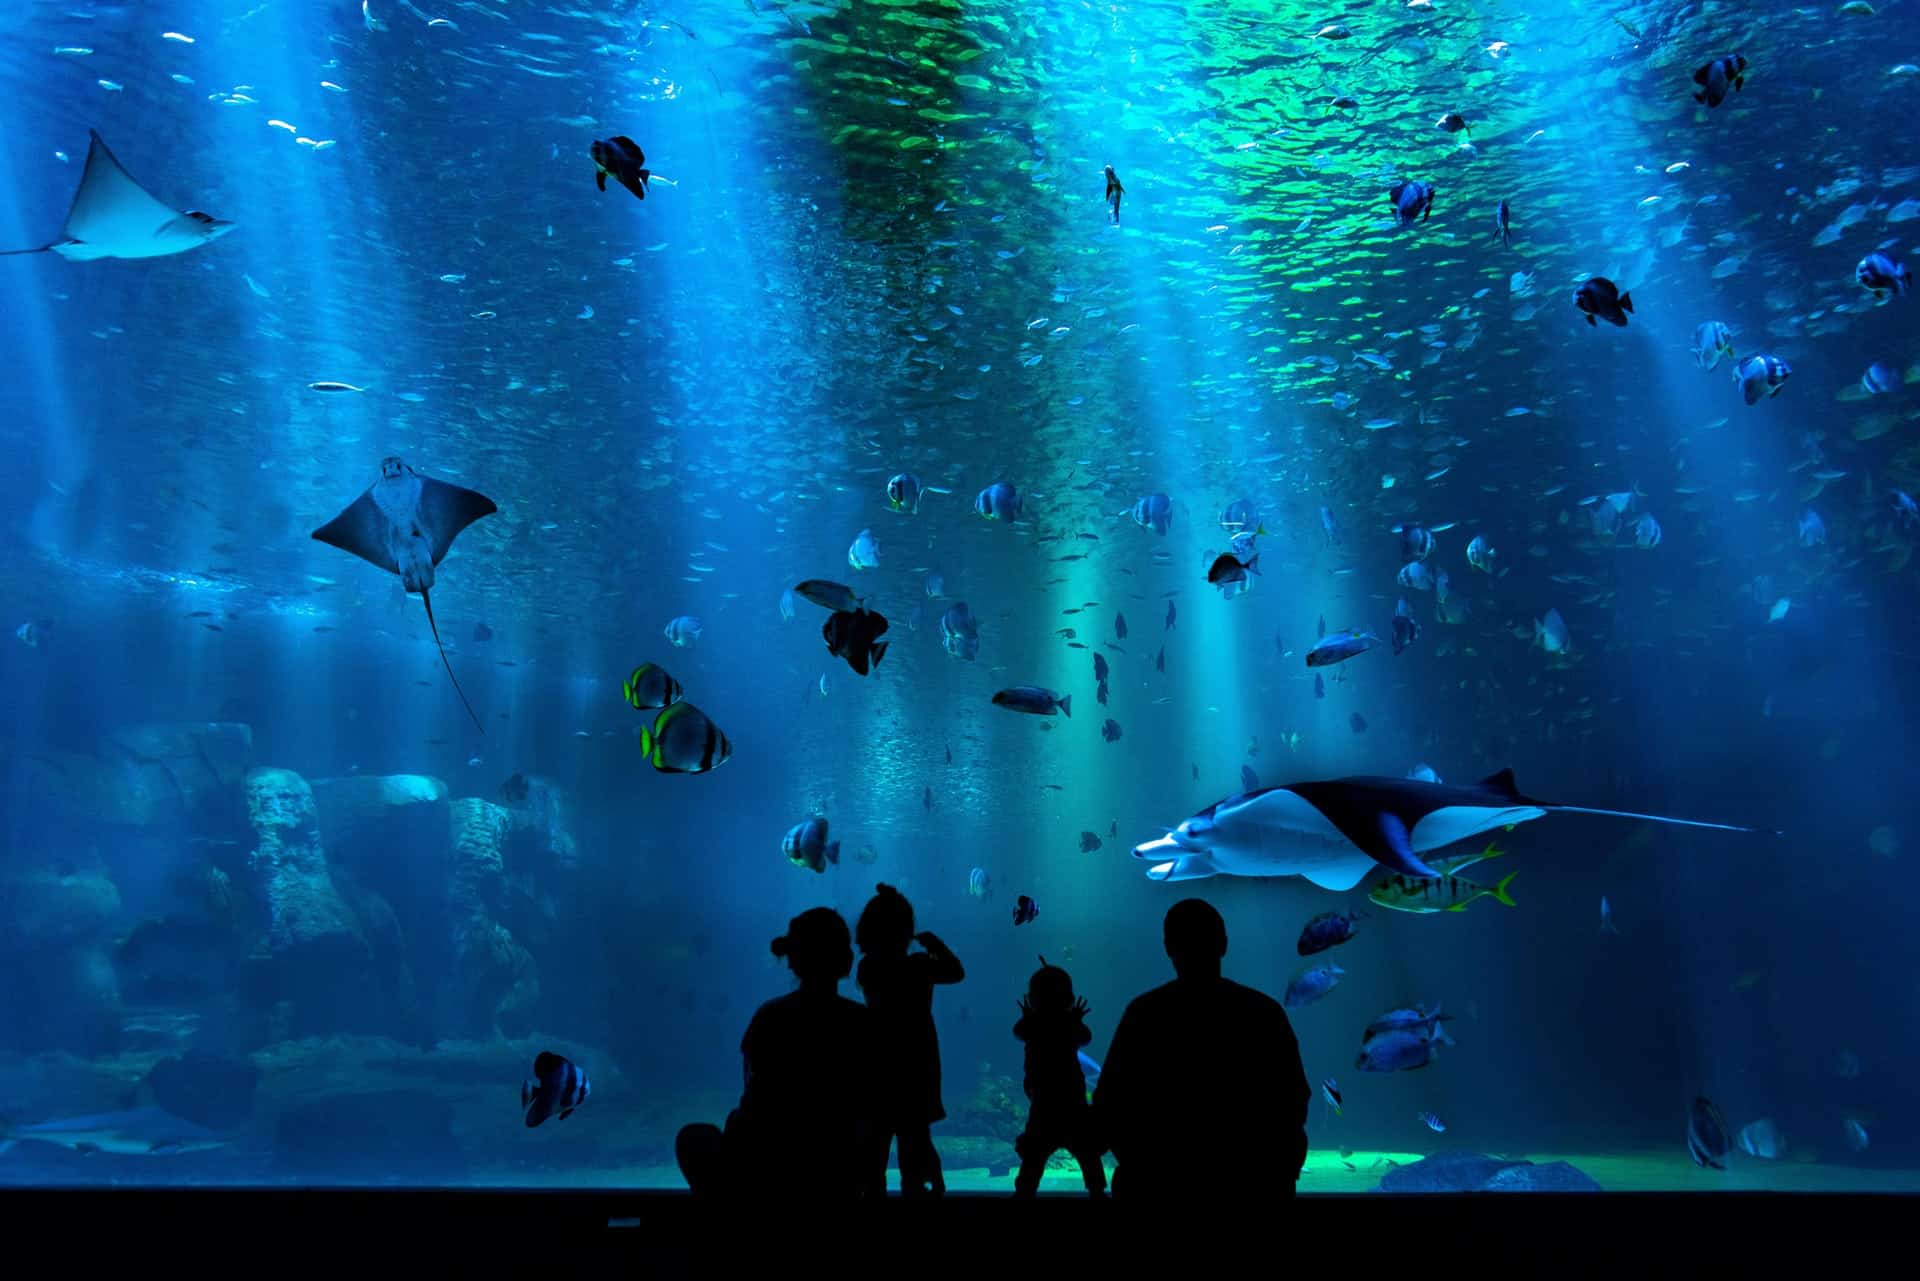 Shark Reef Aquarium is one of the very best things to do in Las Vegas